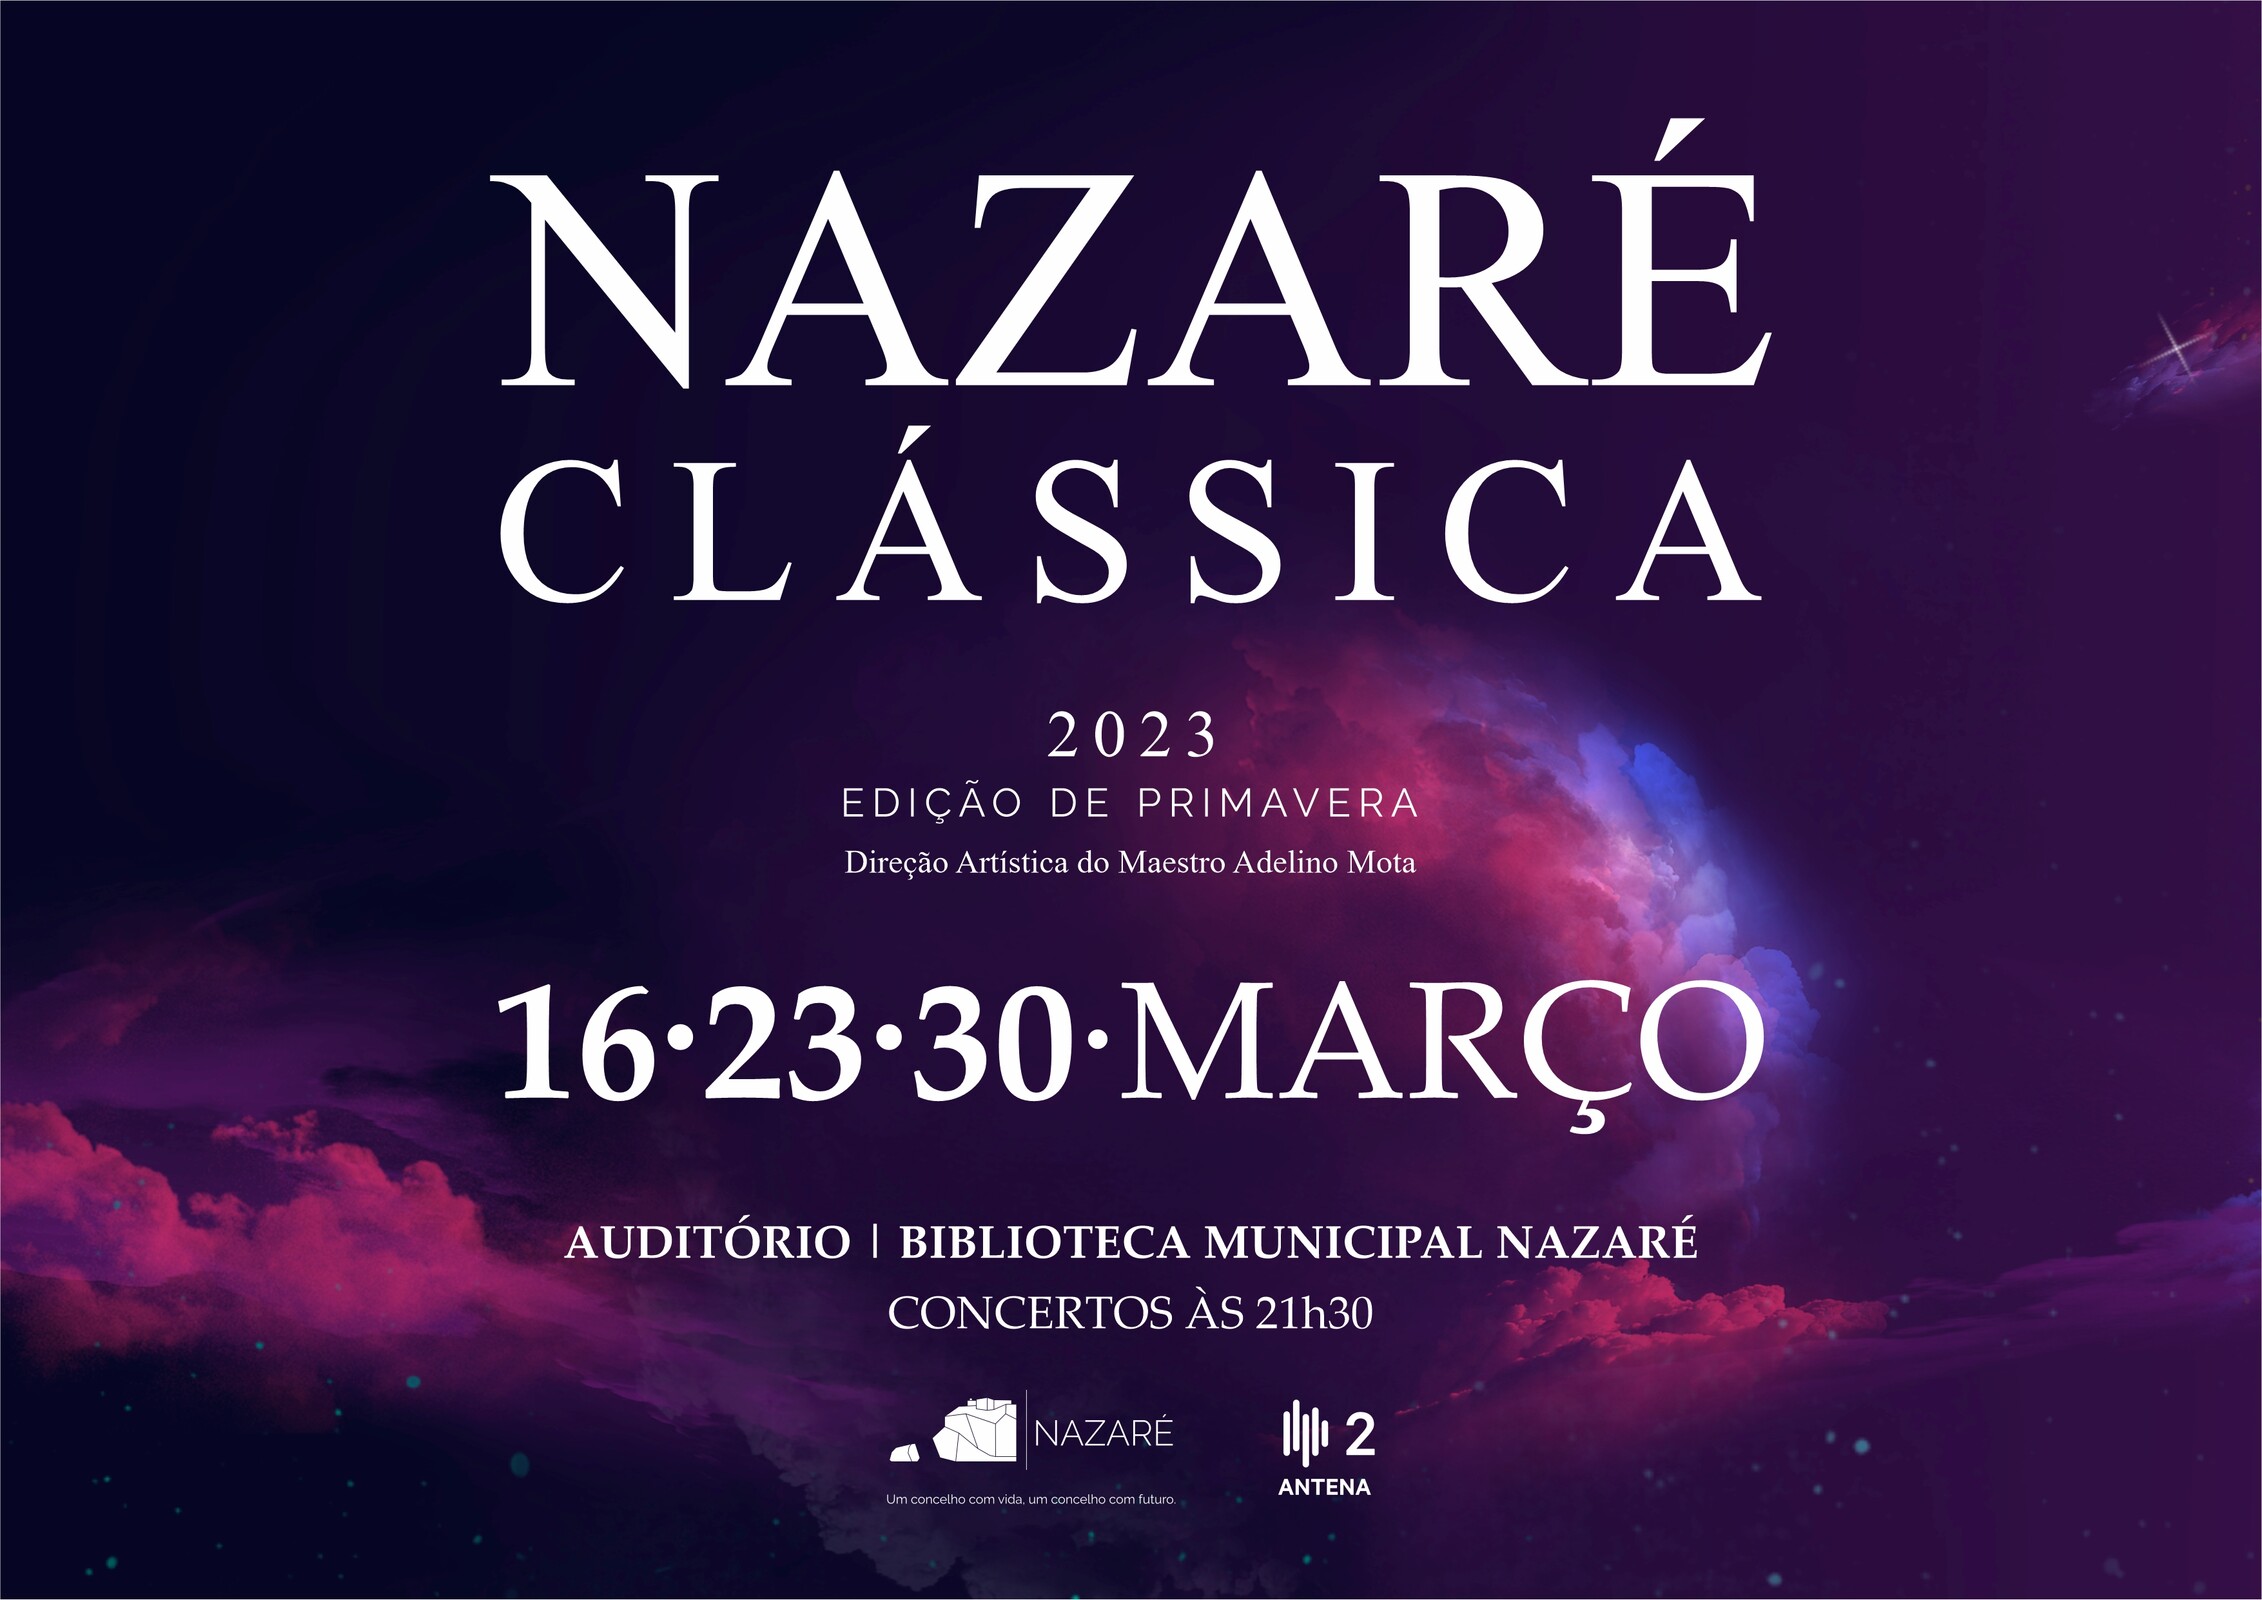 Nazaré Clássica - Edição Primavera 